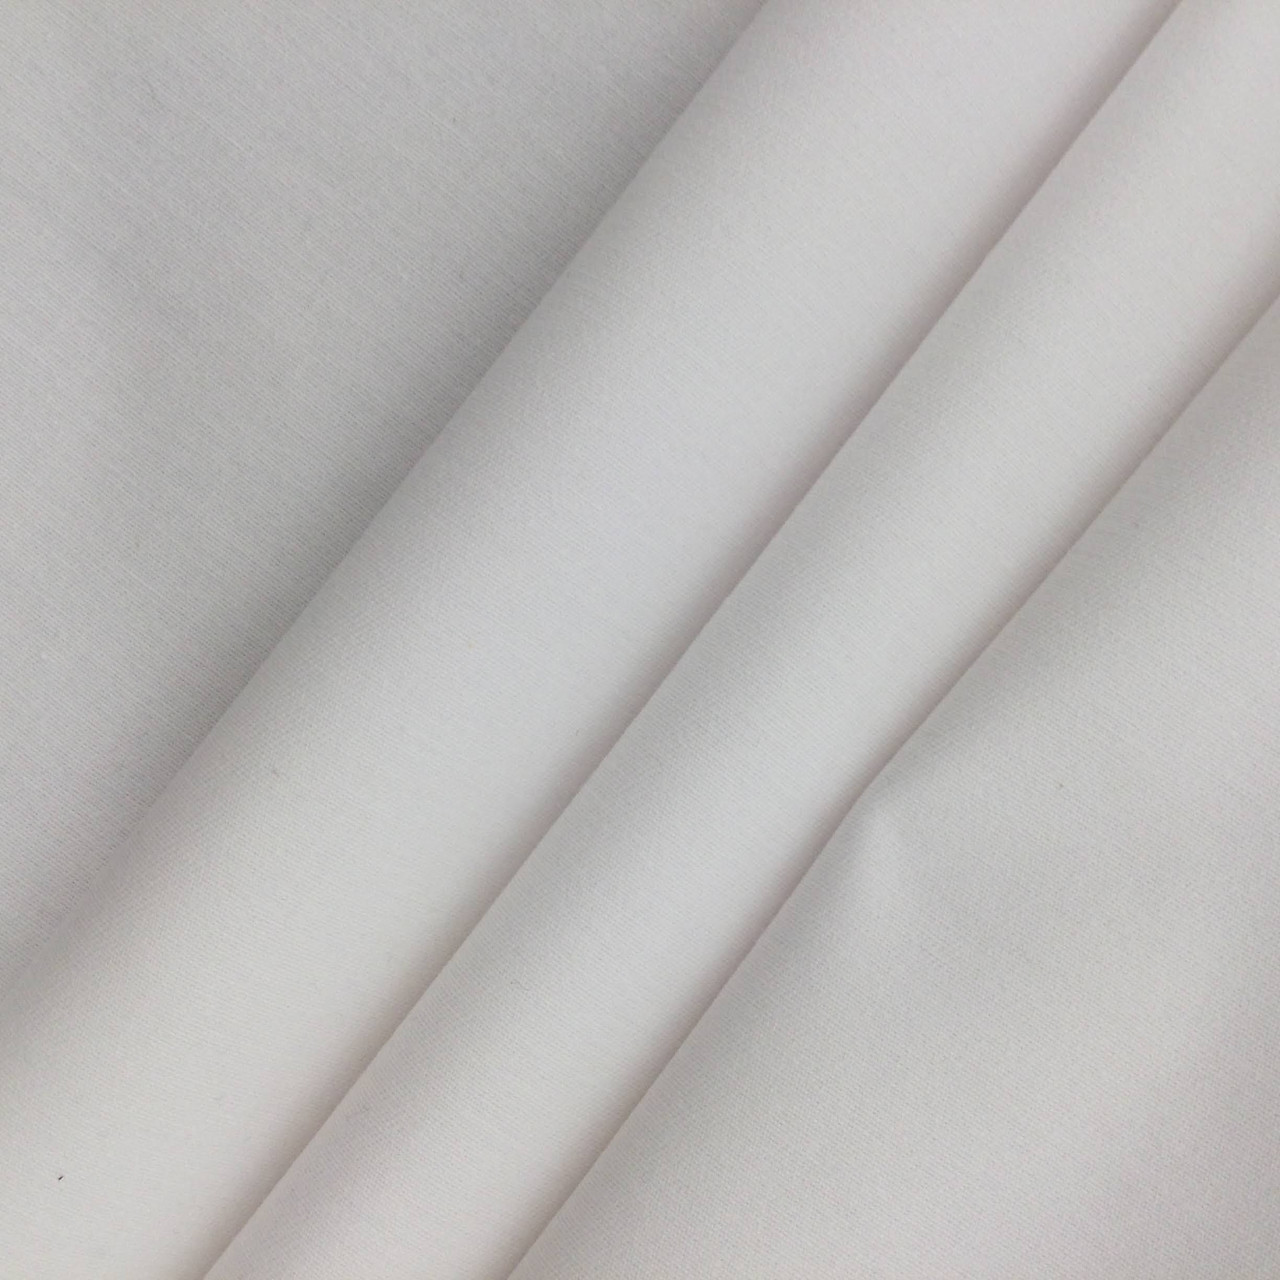 Country & Western Petticoat in White, 100% Pure Cotton Lawn, Dream  Petticoats